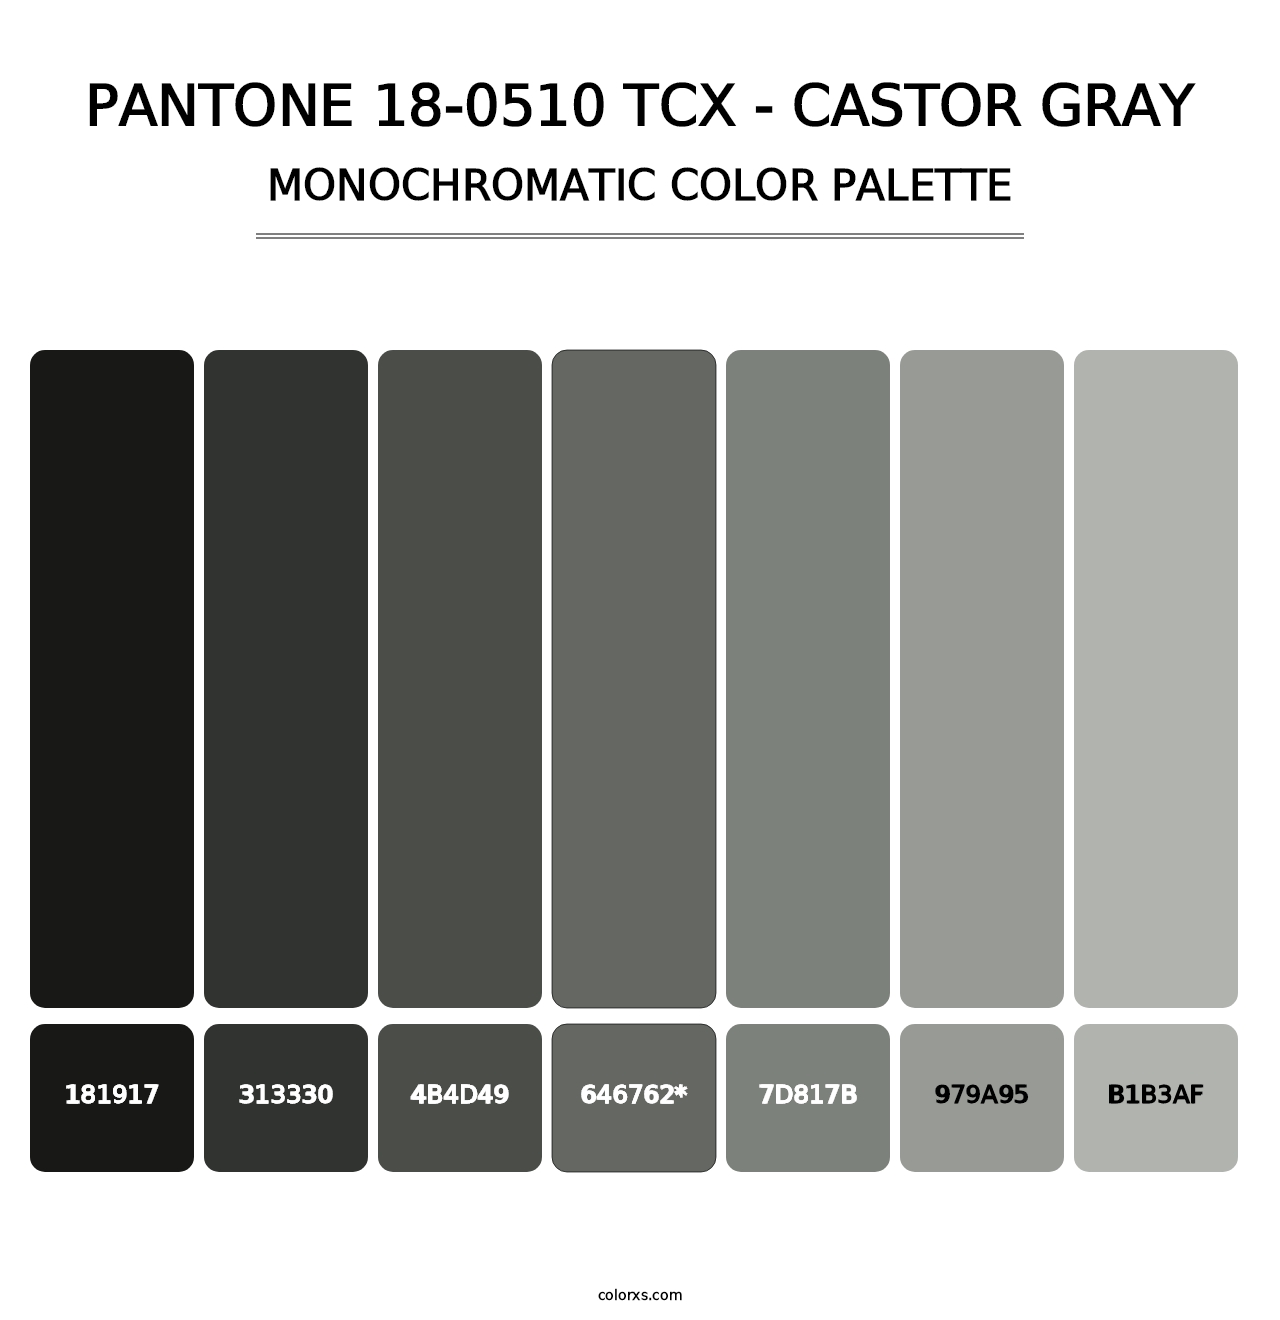 PANTONE 18-0510 TCX - Castor Gray - Monochromatic Color Palette